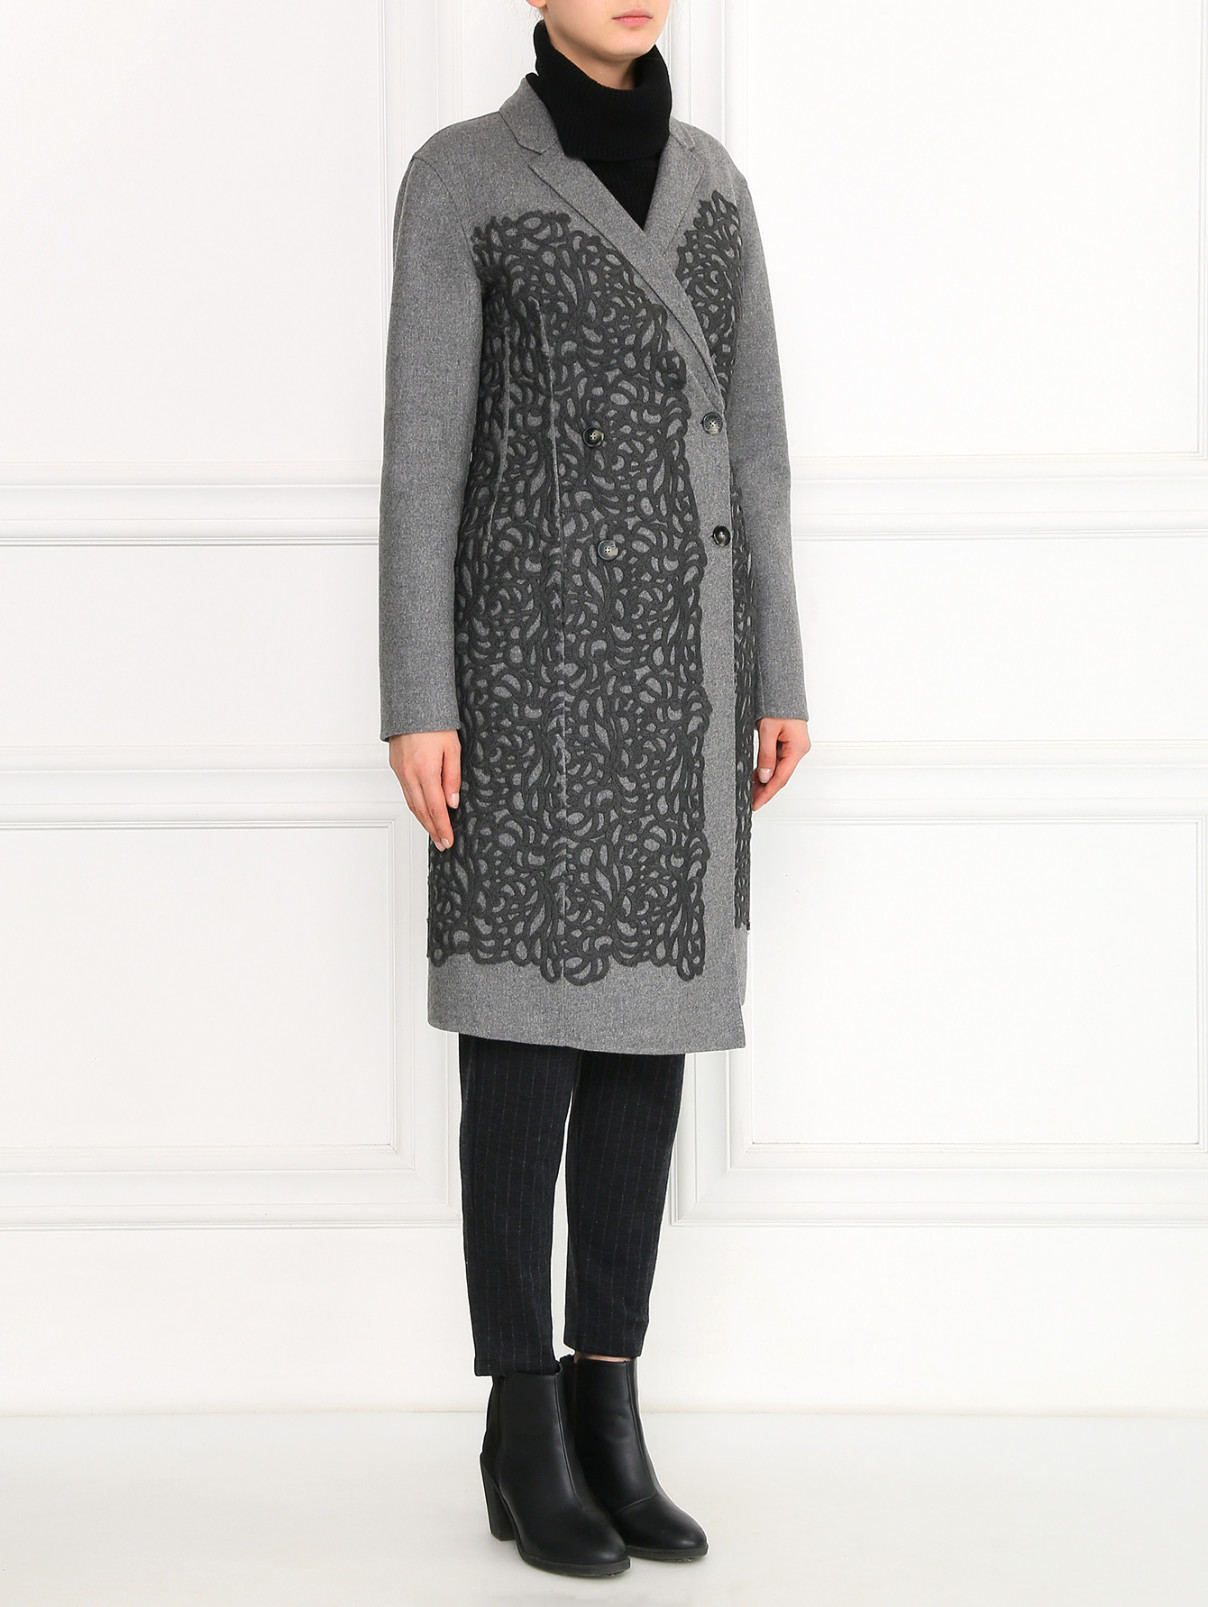 Двубортное пальто из шерсти с аппликацией Ermanno Scervino  –  Модель Общий вид  – Цвет:  Серый